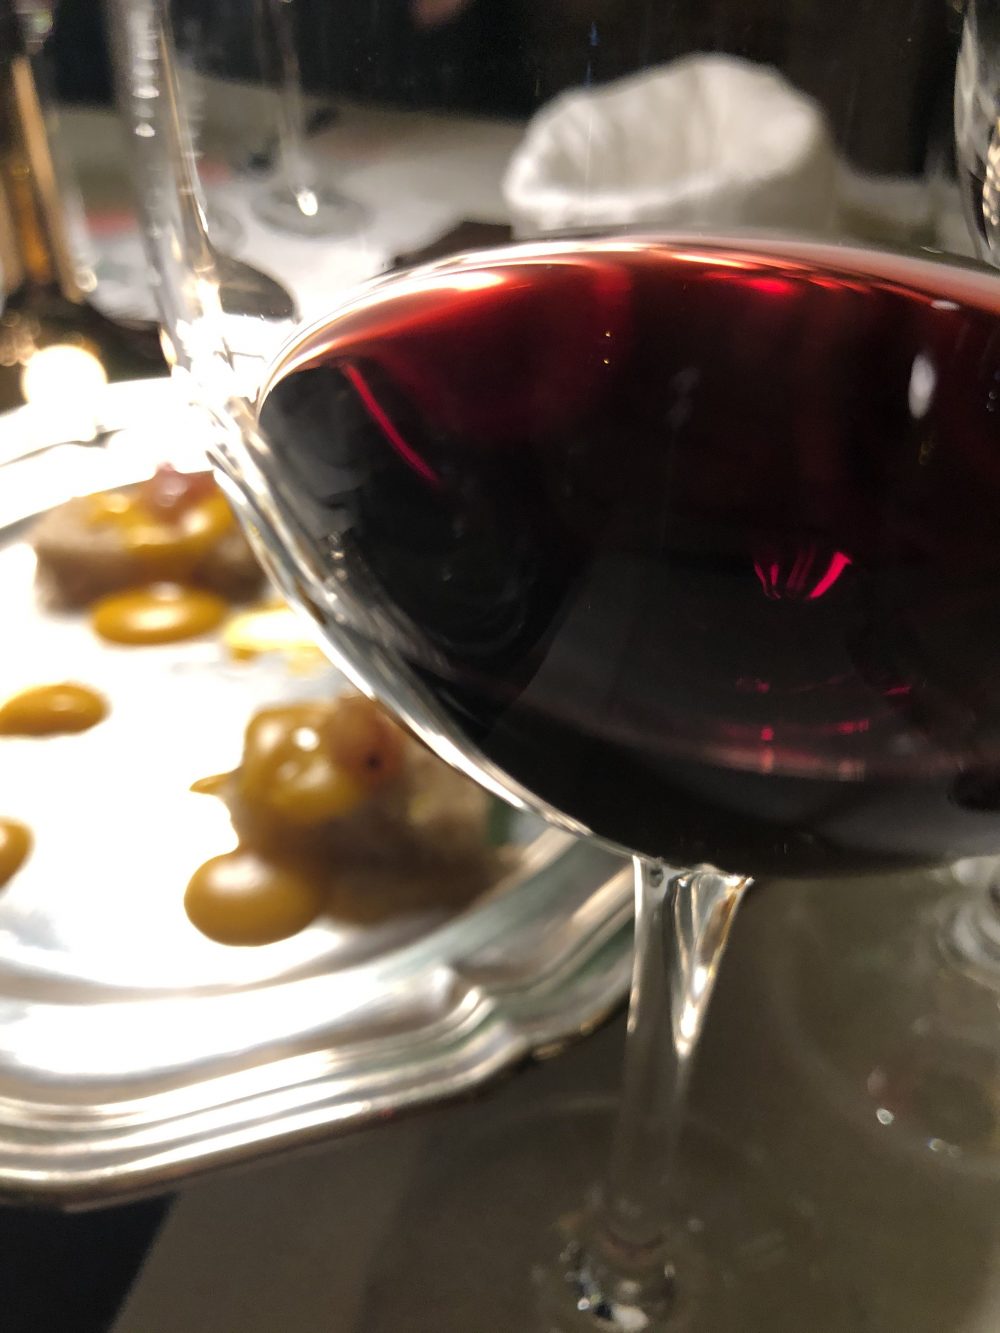  Intenso e concentrato il colore del Tempranillo, vitigno che nasce nella regione spagnola della Rioja